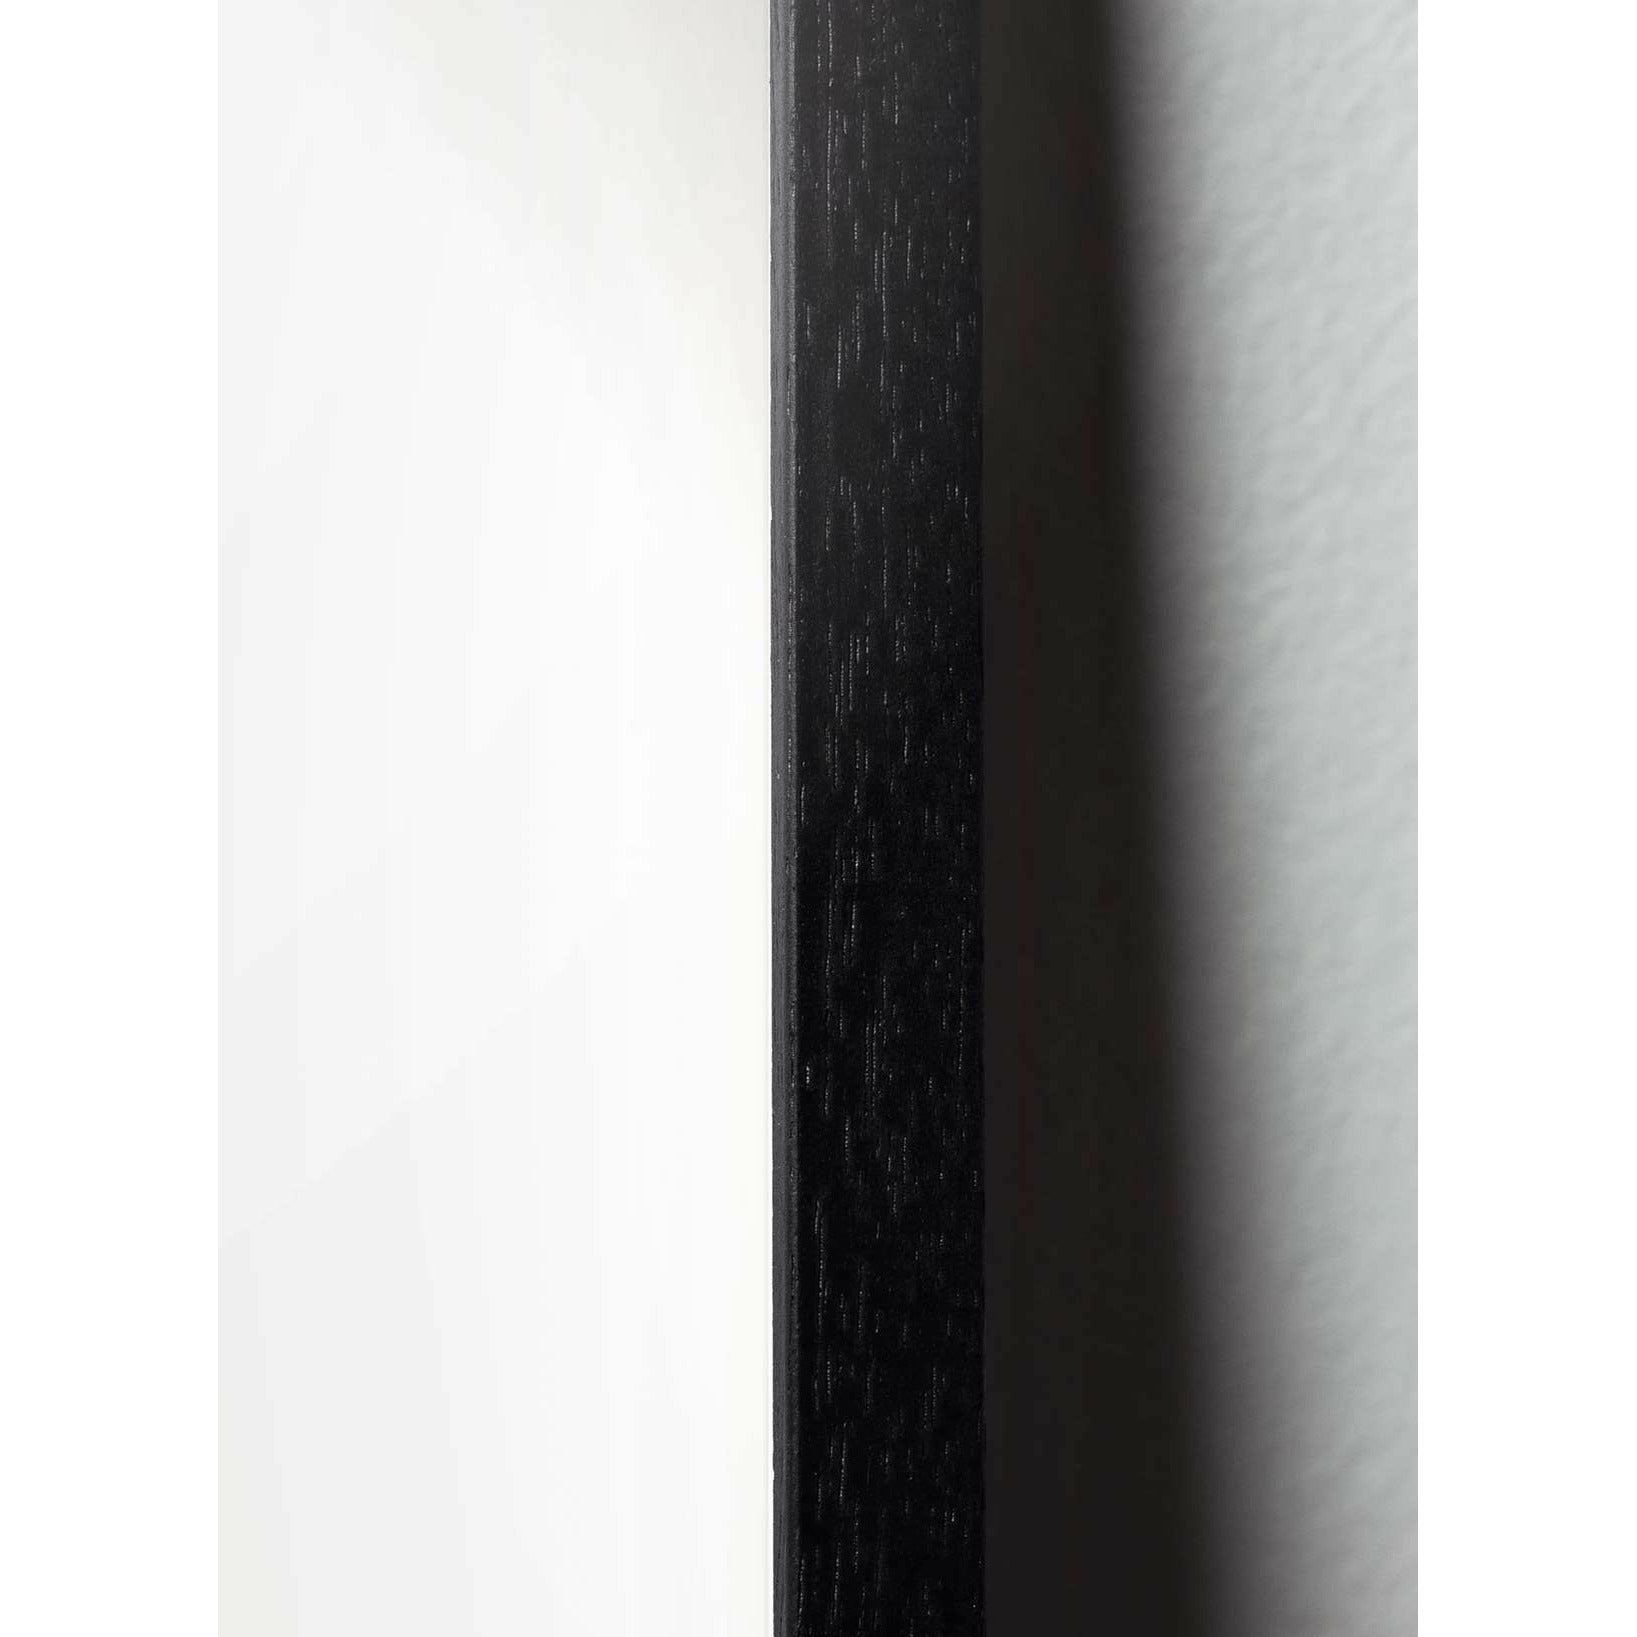 Pomysły Pine Classic Plakat, rama w czarnym lakierowanym drewnie 50x70 cm, ciemnoniebieskie tło